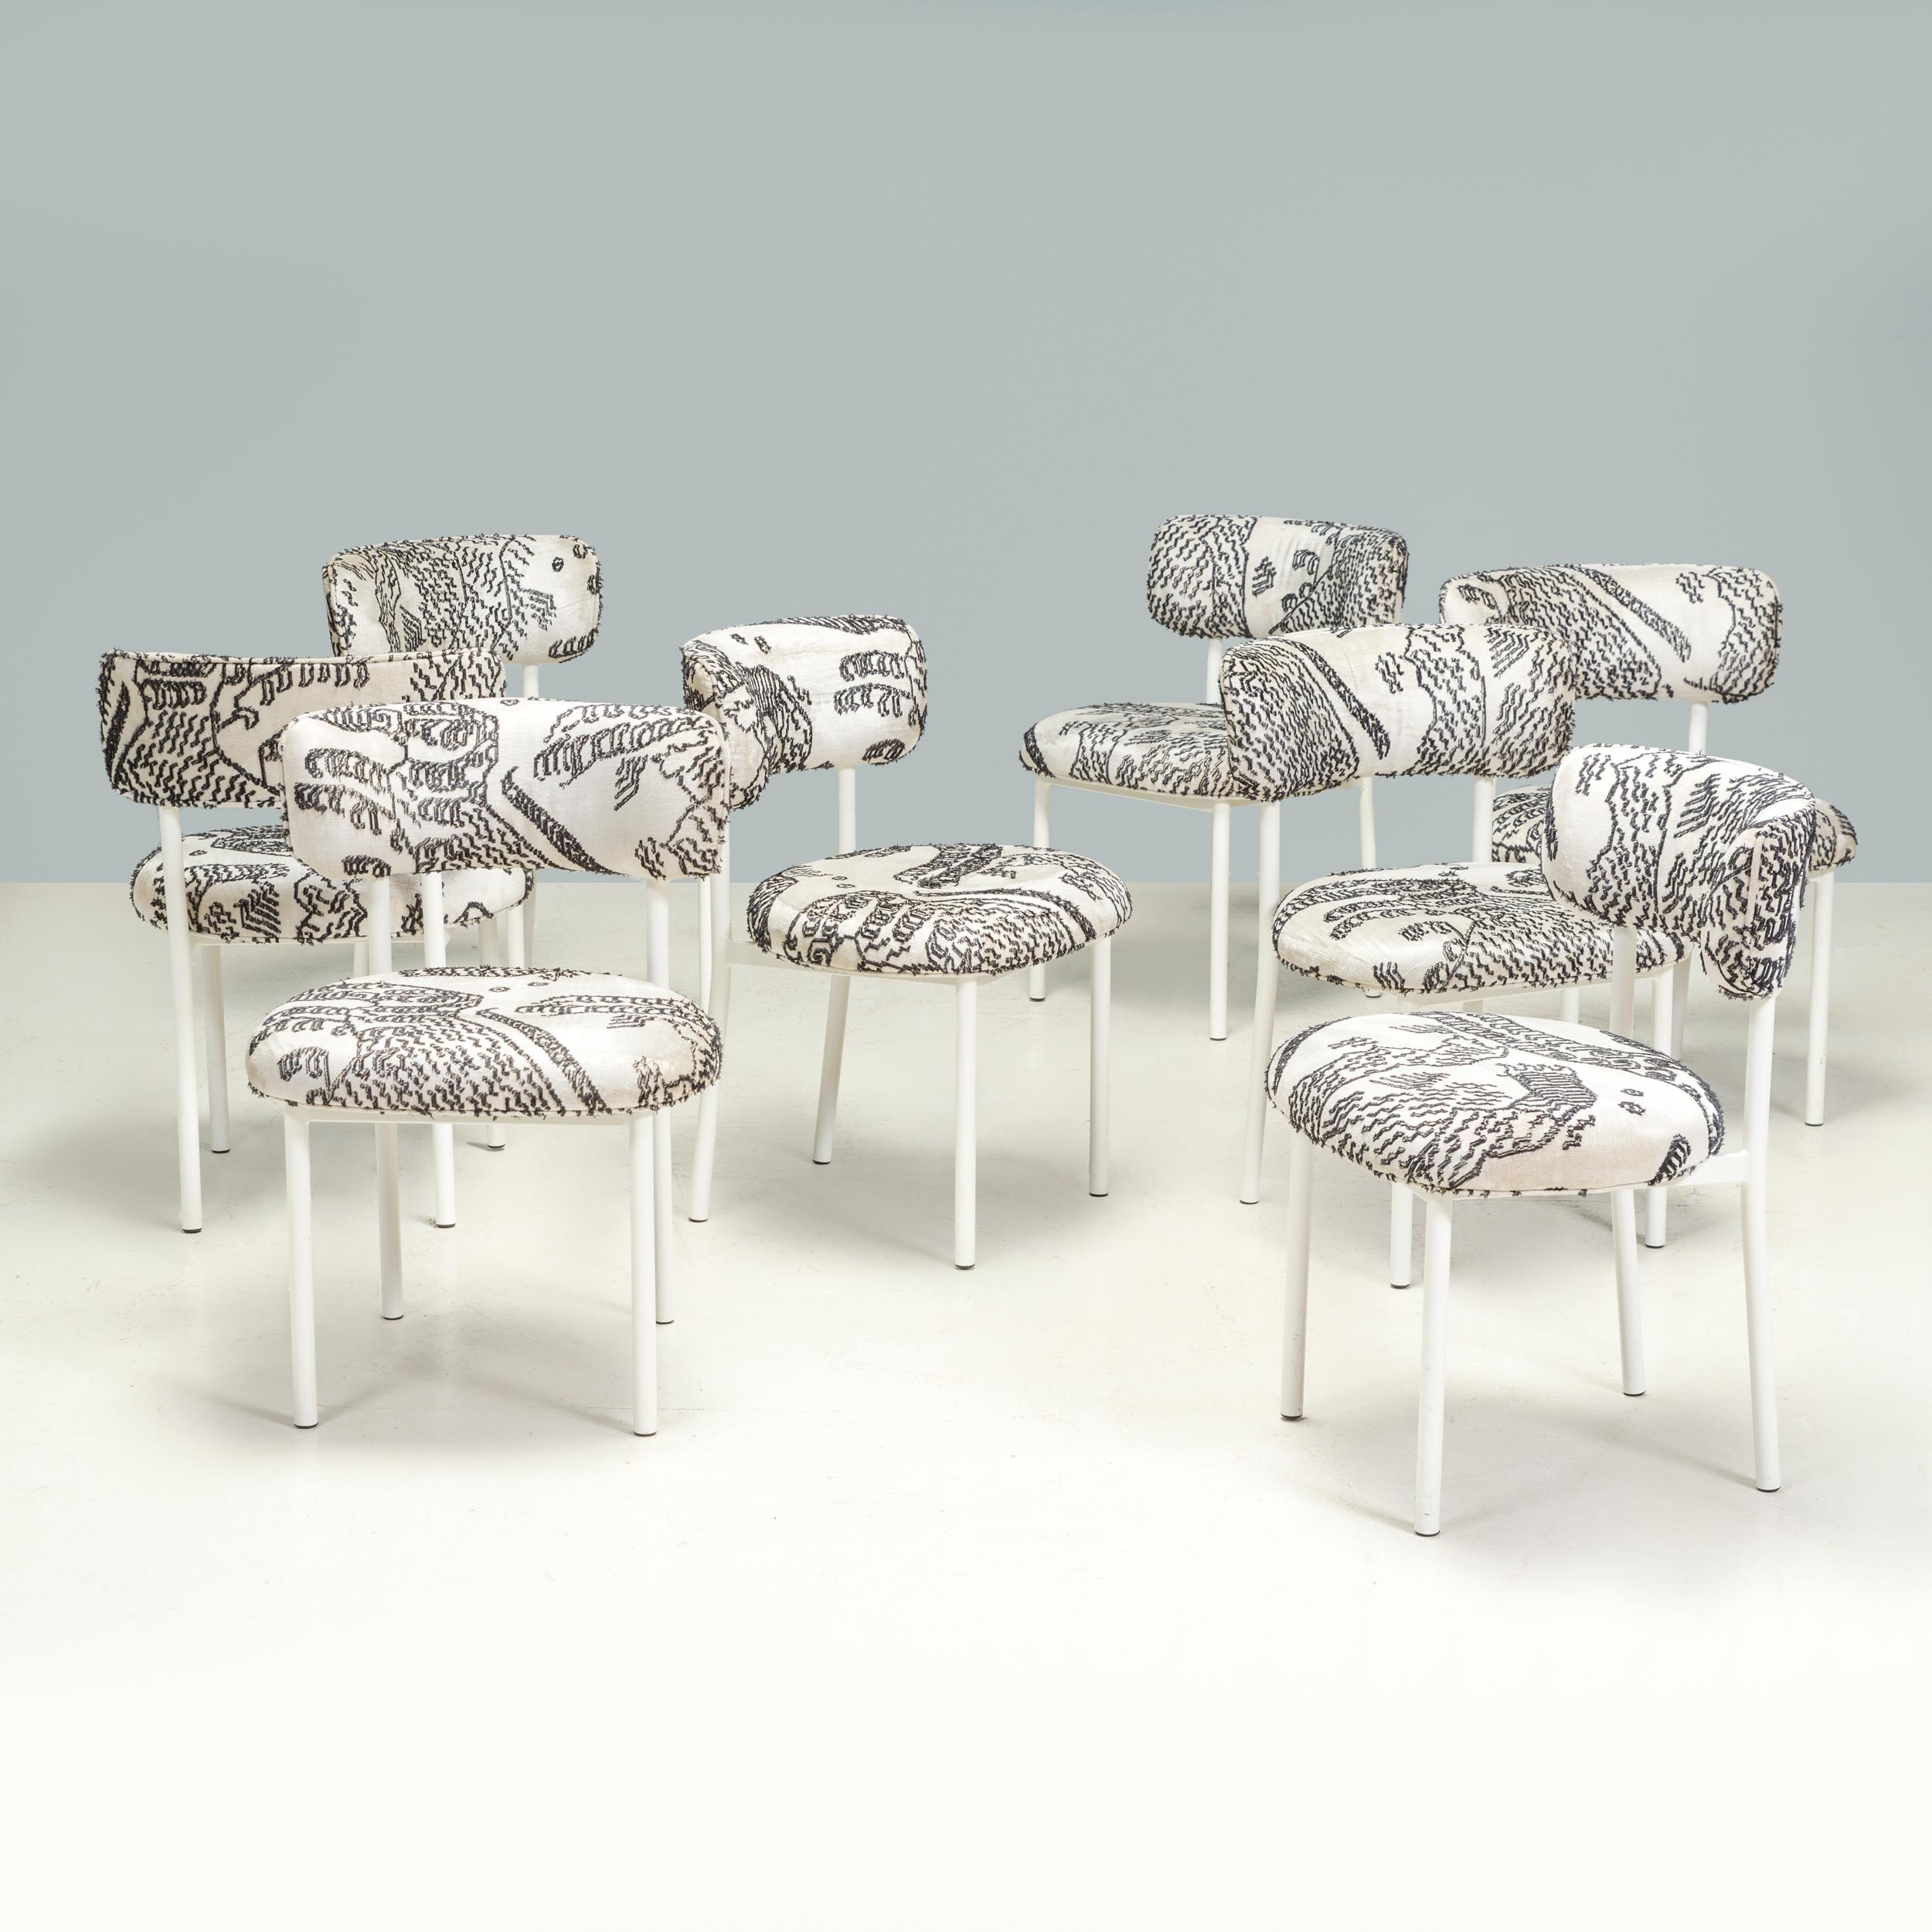 Conçue à l'origine par David Thulstrup pour Møbel Copenhagen, la chaise de salle à manger Font est un exemple fantastique de design danois contemporain.

Construites à partir d'une structure en acier avec un revêtement en poudre blanc mat, les